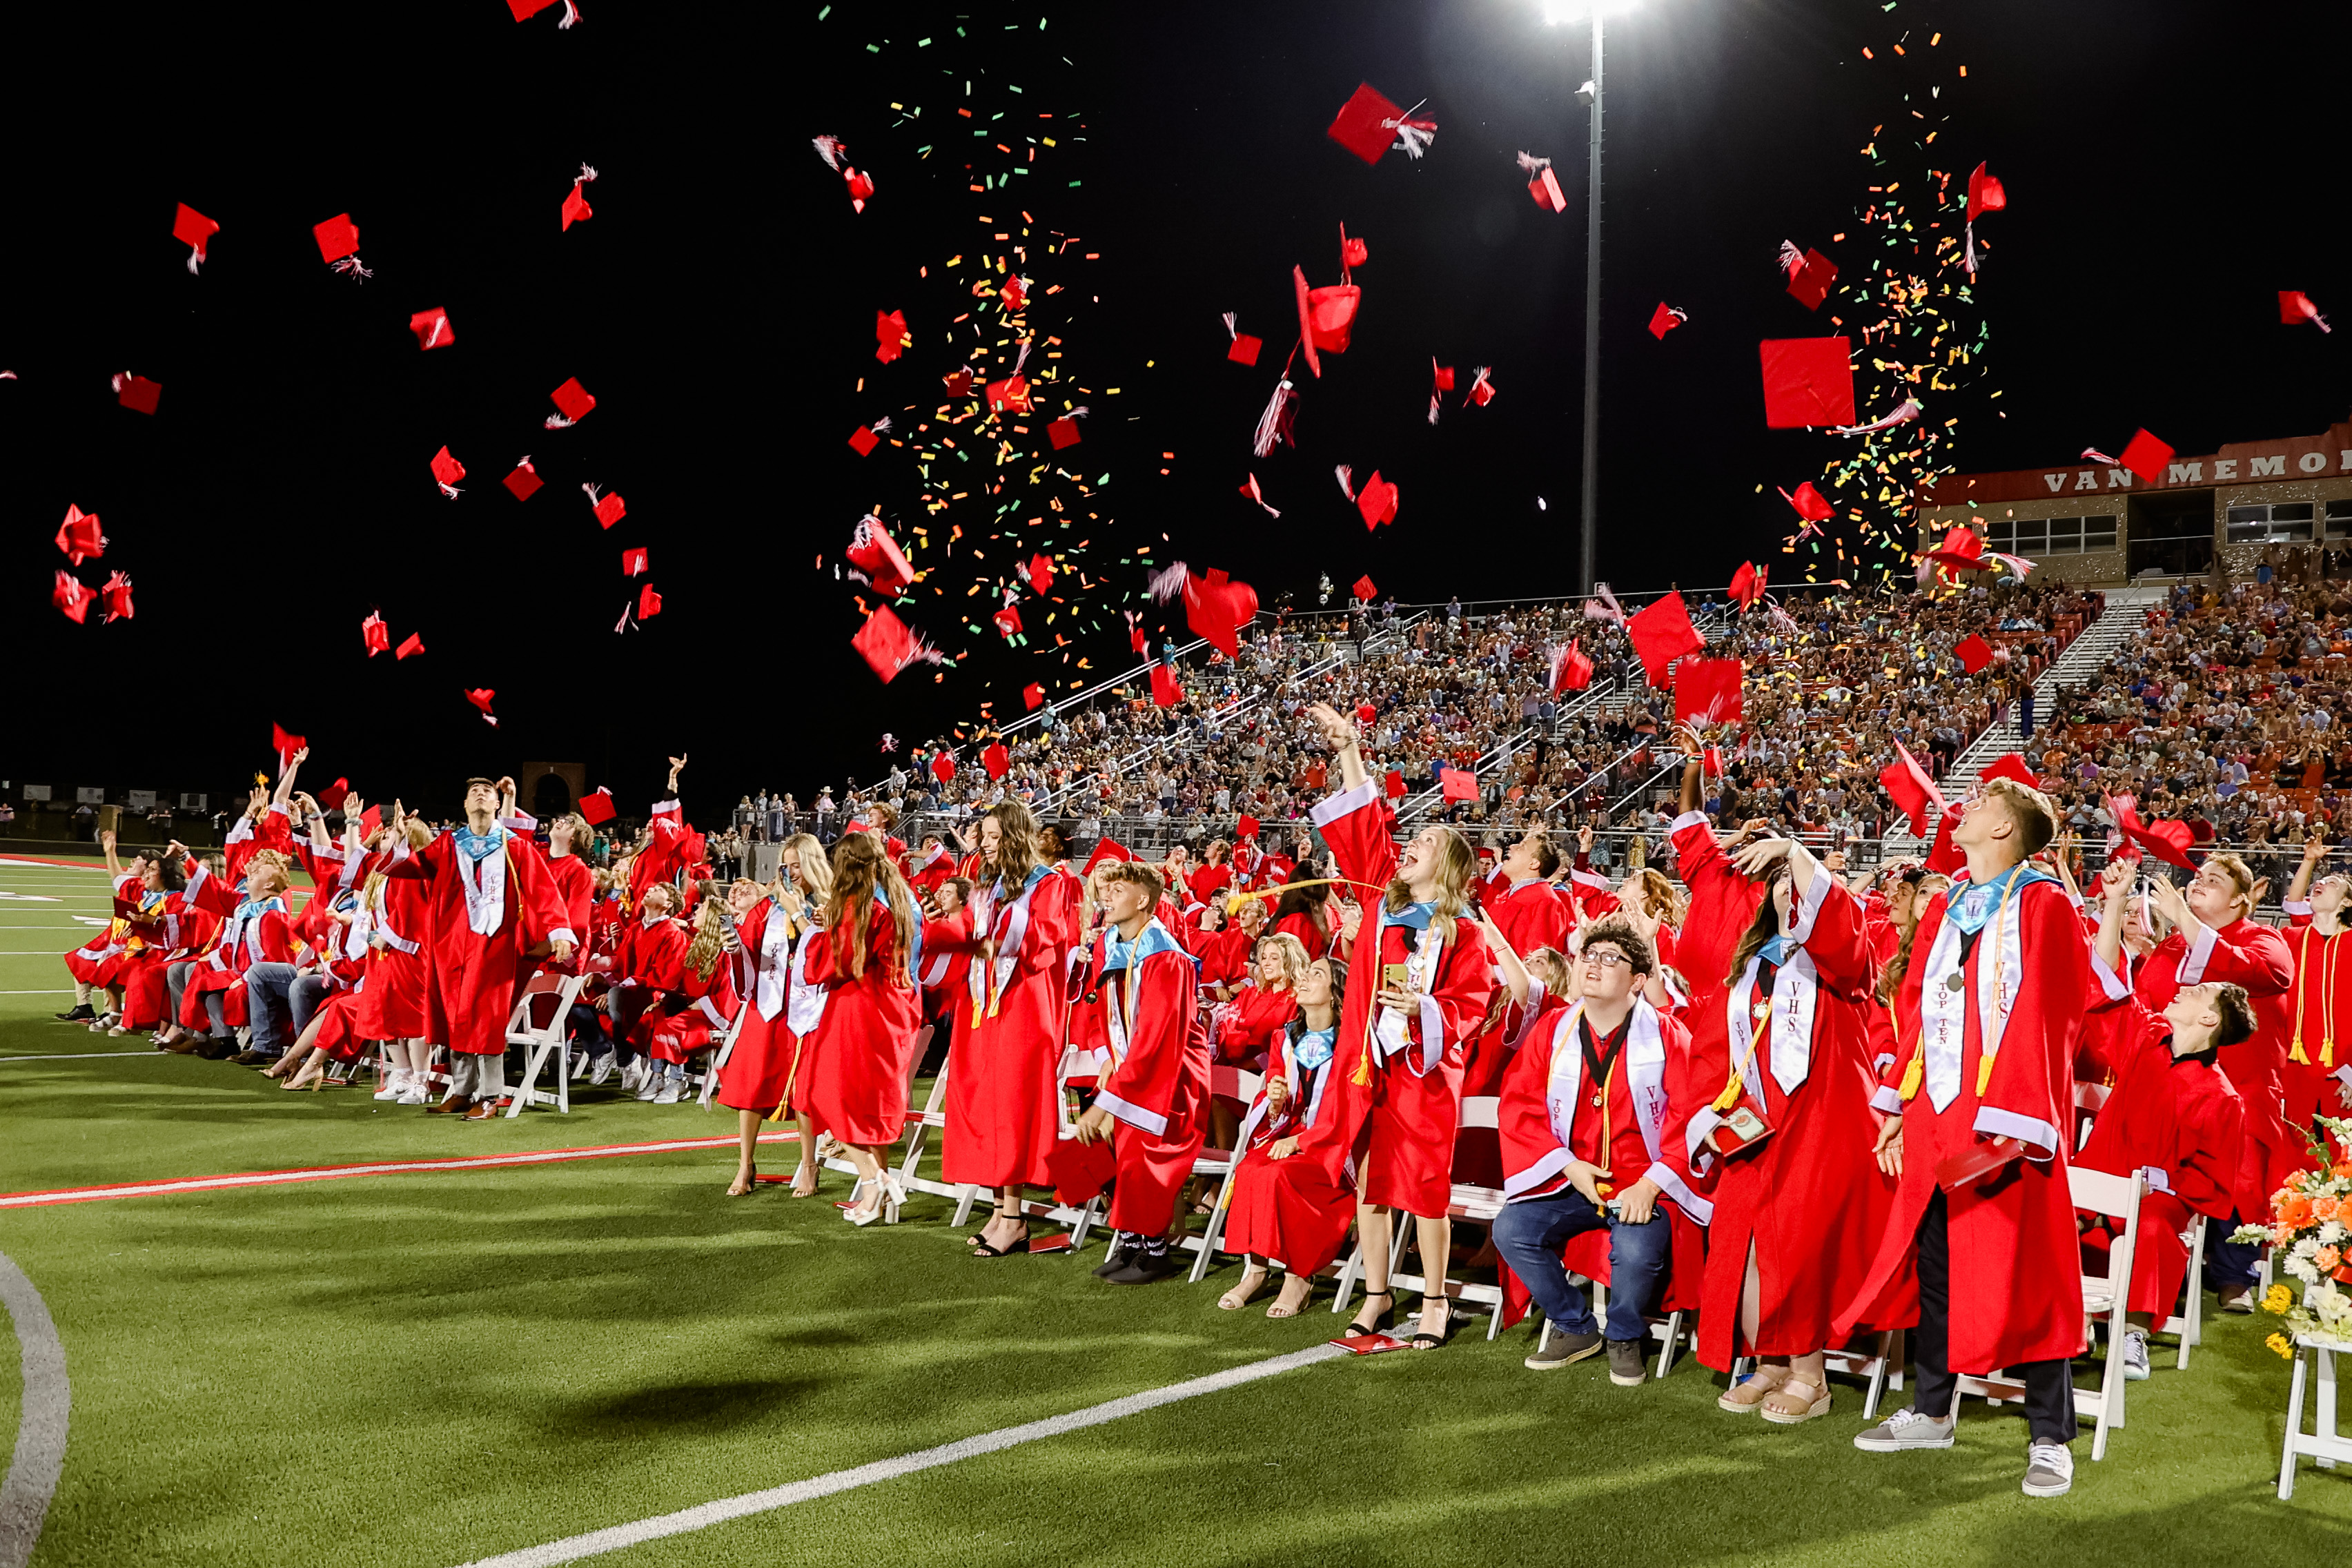 high school graduates throw their caps in the air